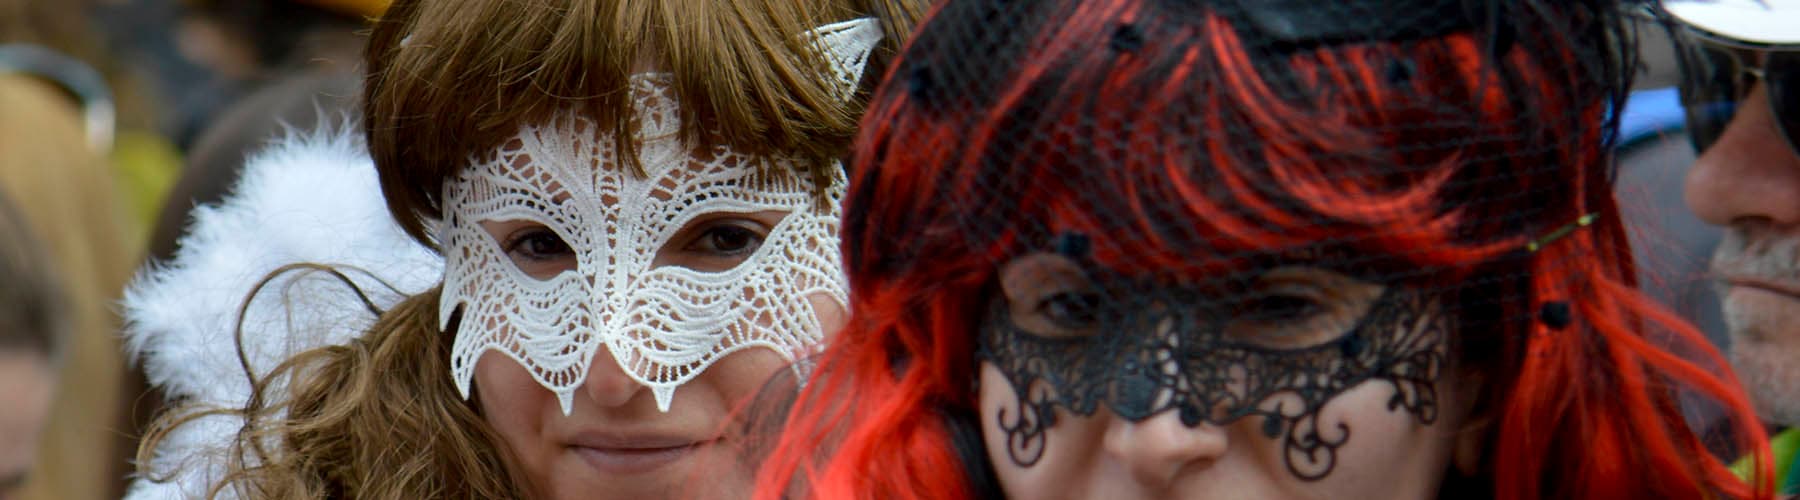 carnaval-miguelturra-mascaras-callejeras